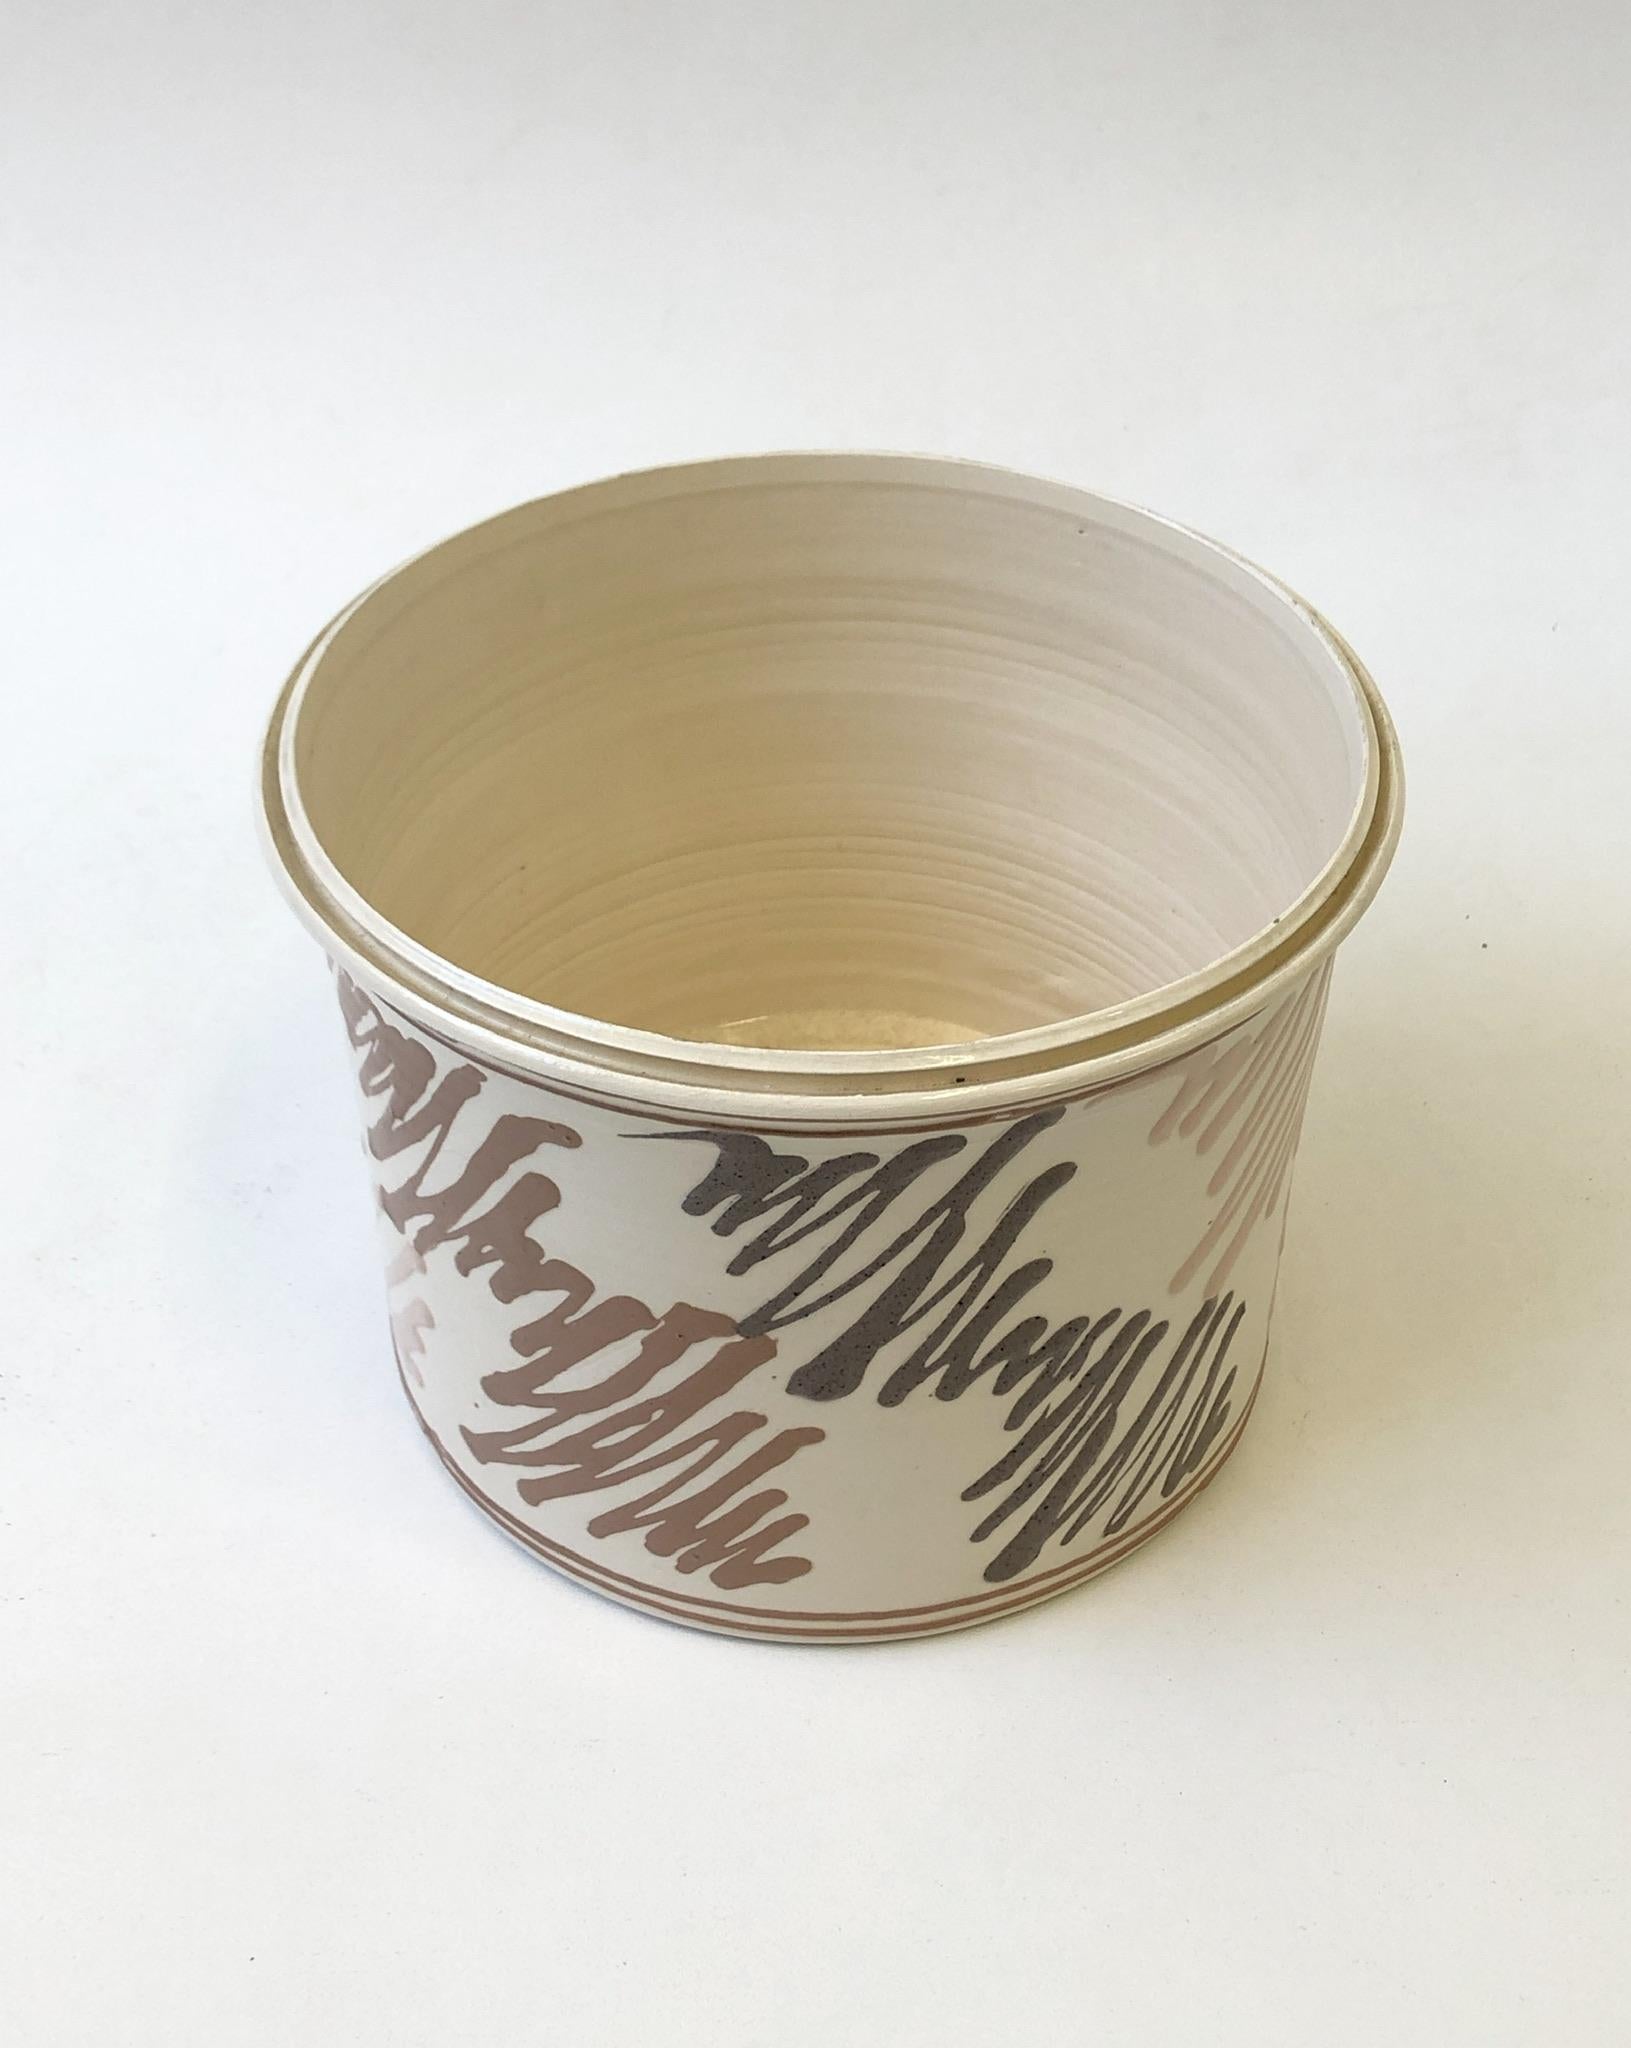 Modern Studio Ceramic Planter by Roy Hamilton for Steve Chase